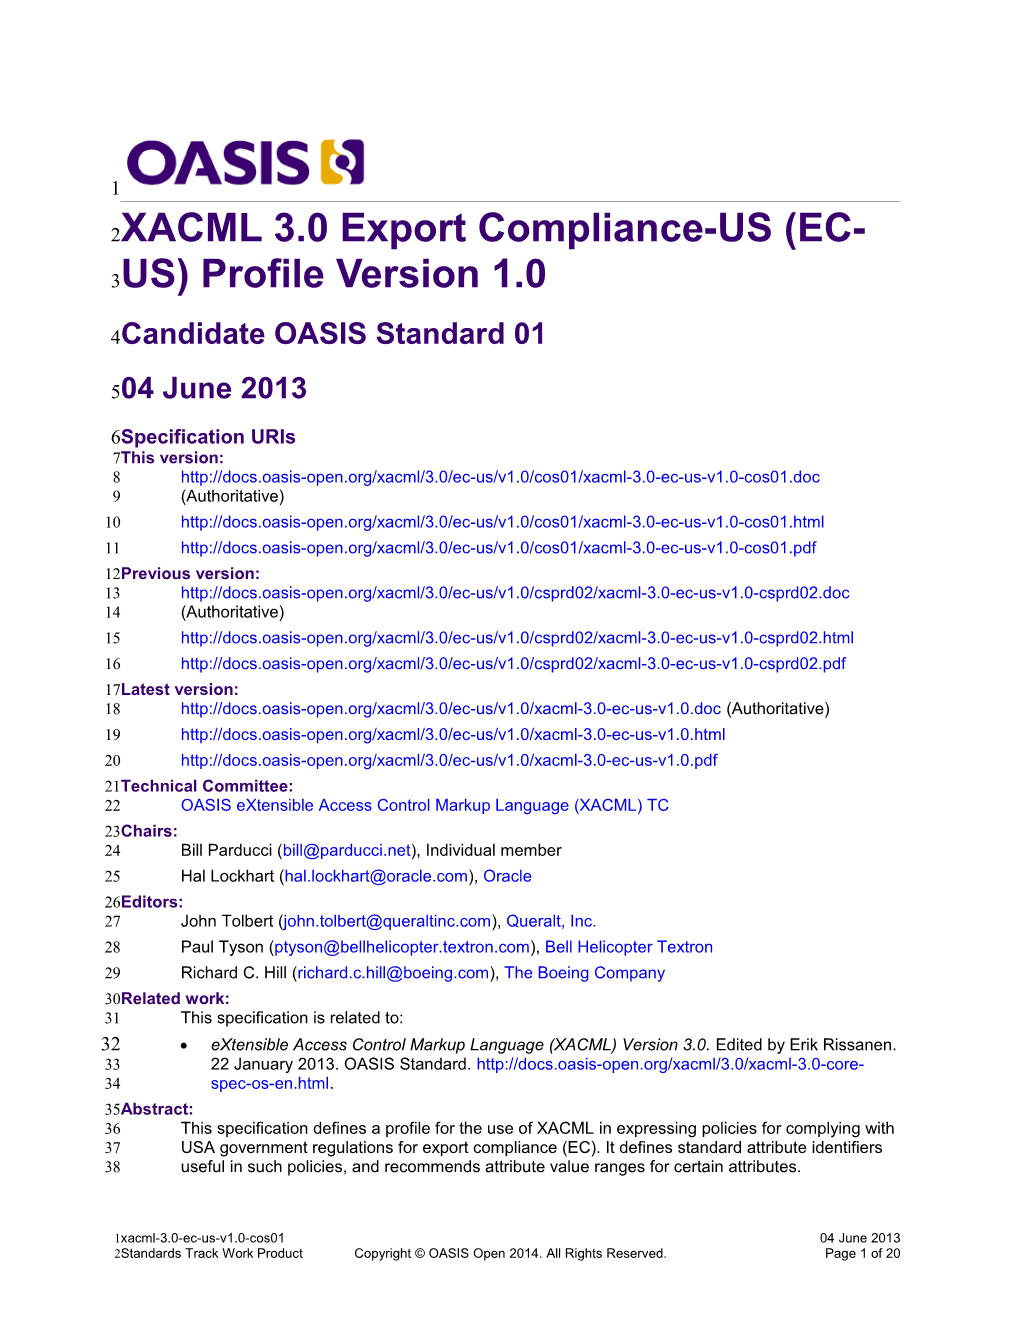 XACML 3.0 Export Compliance-US (EC-US) Profile Version 1.0